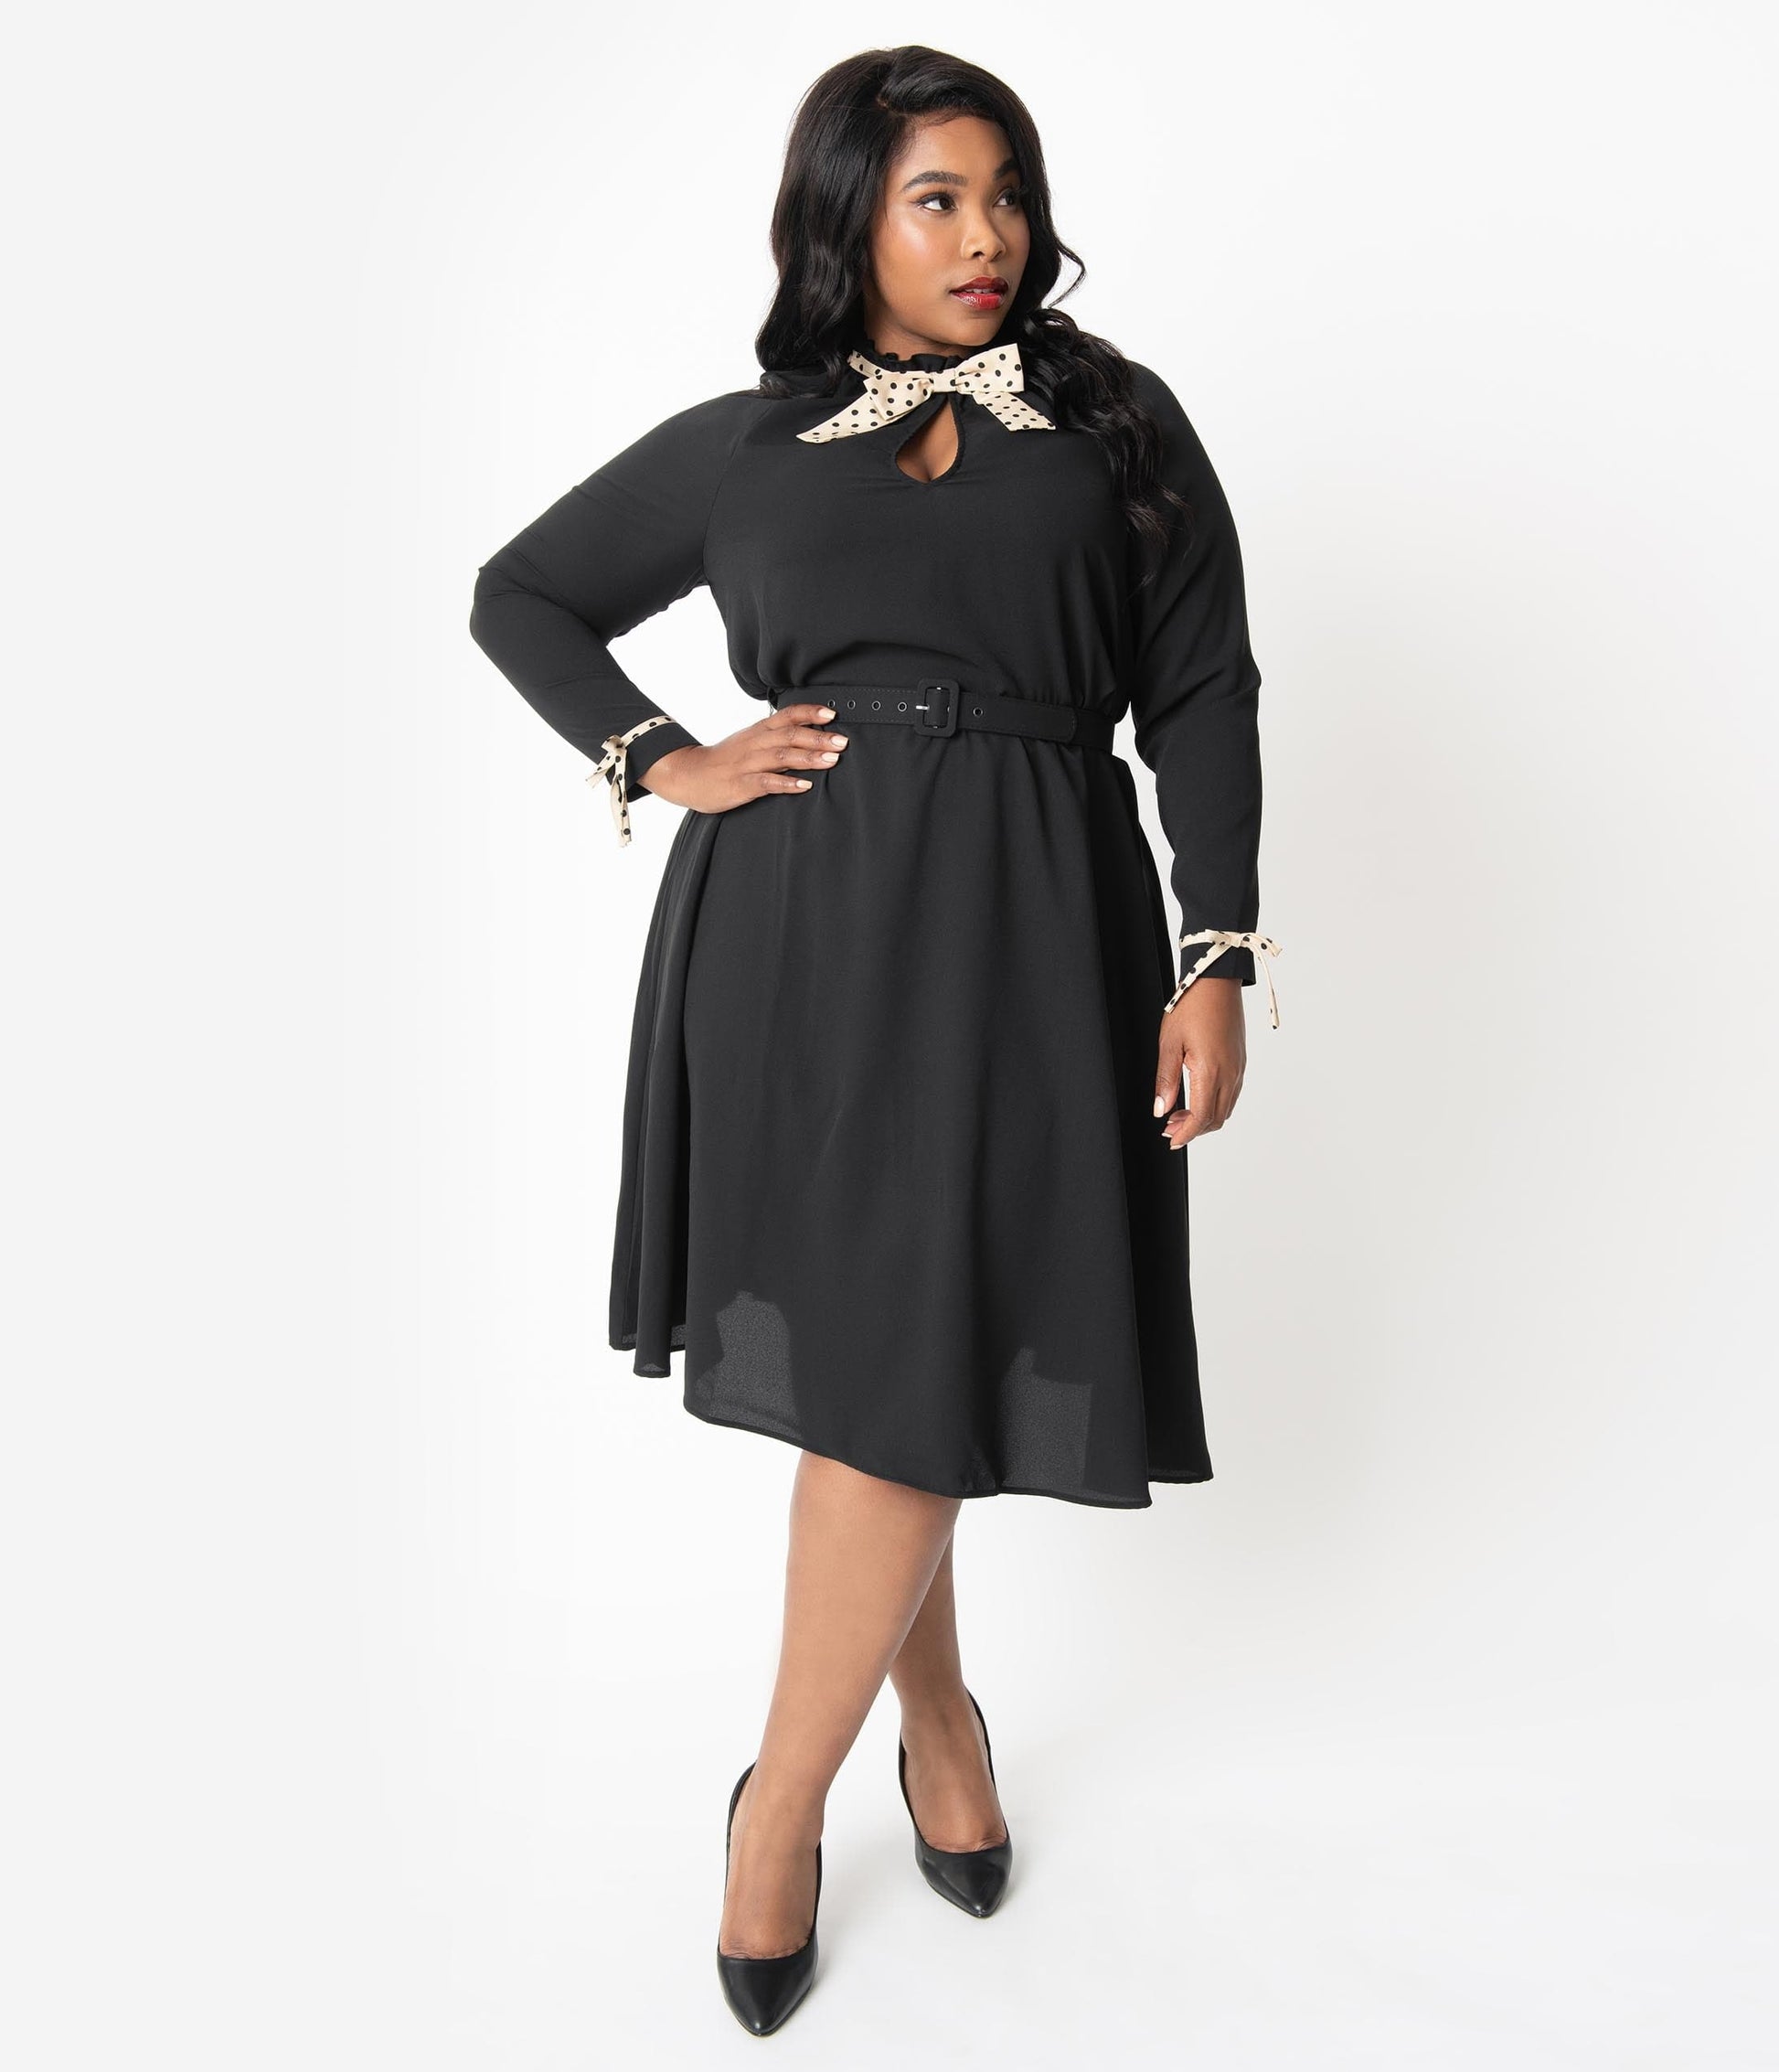 Unique Vintage Plus Size 1950s Style Black & Tan Dotted High Neck Vandella Swing Dress